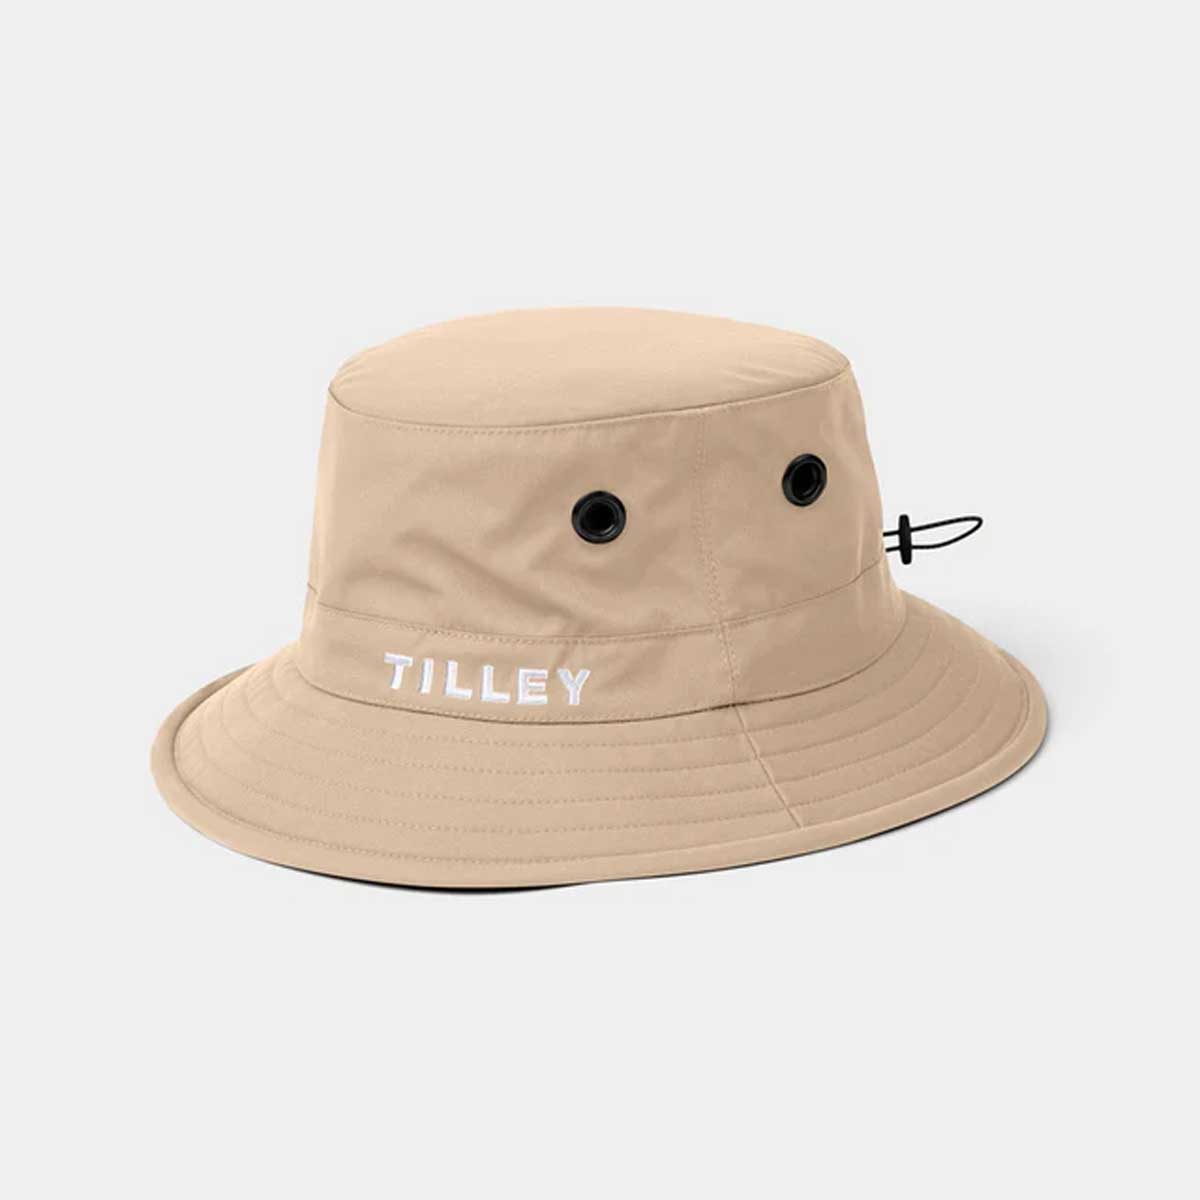 TILLEY Golf Bucket Hat - Light Tan